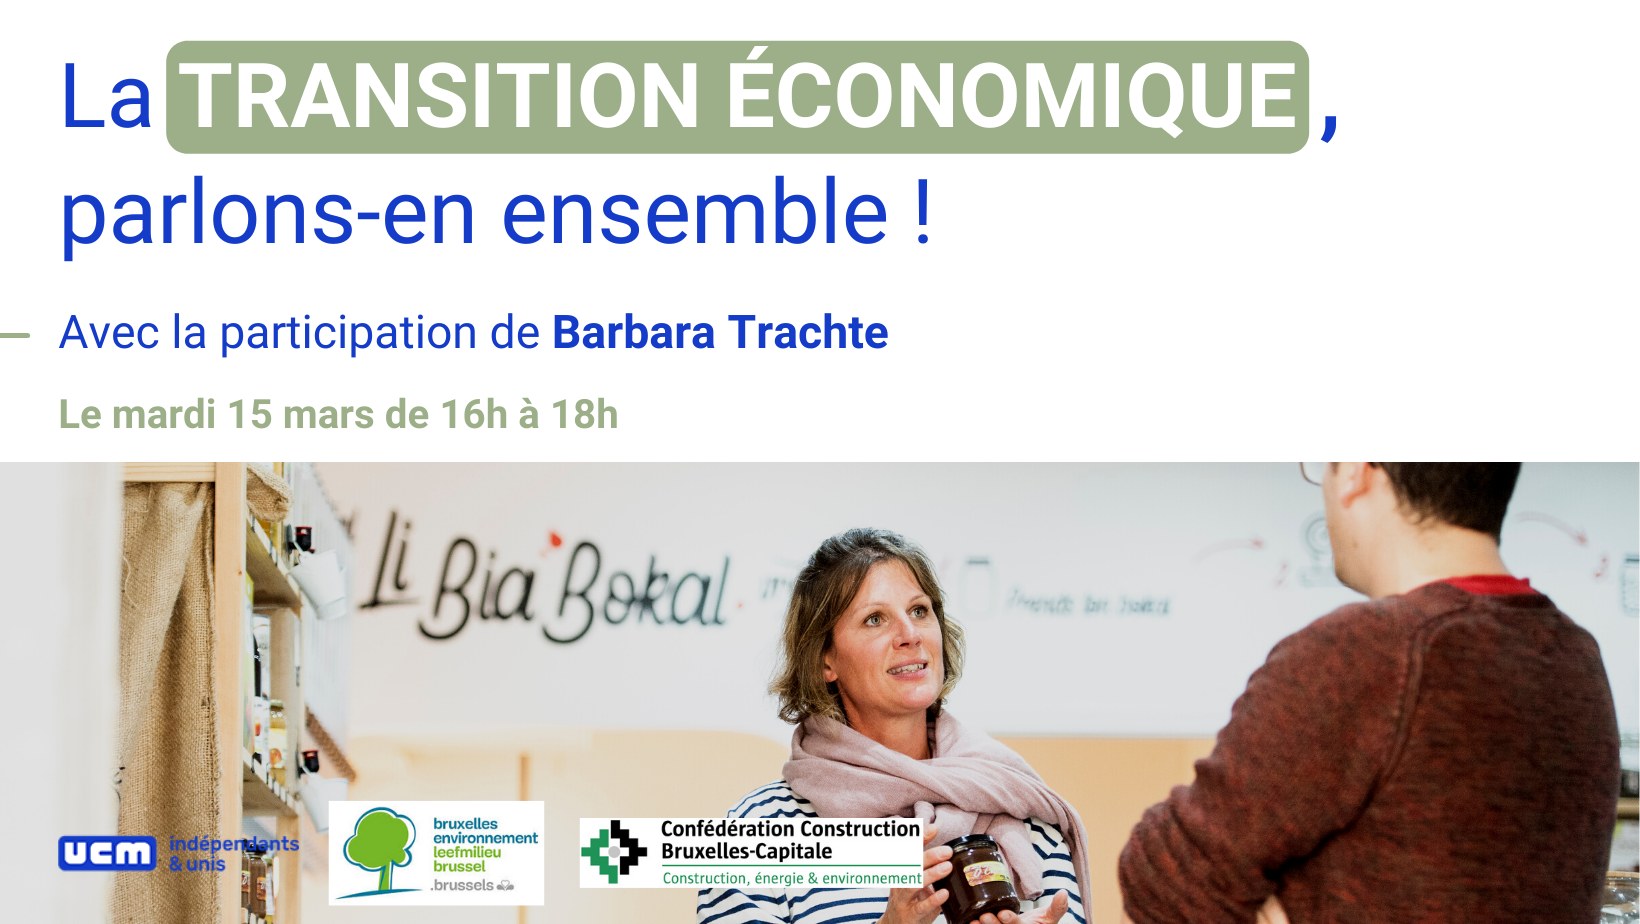 La transition économique, parlons-en ensemble! (UCM Bruxelles)